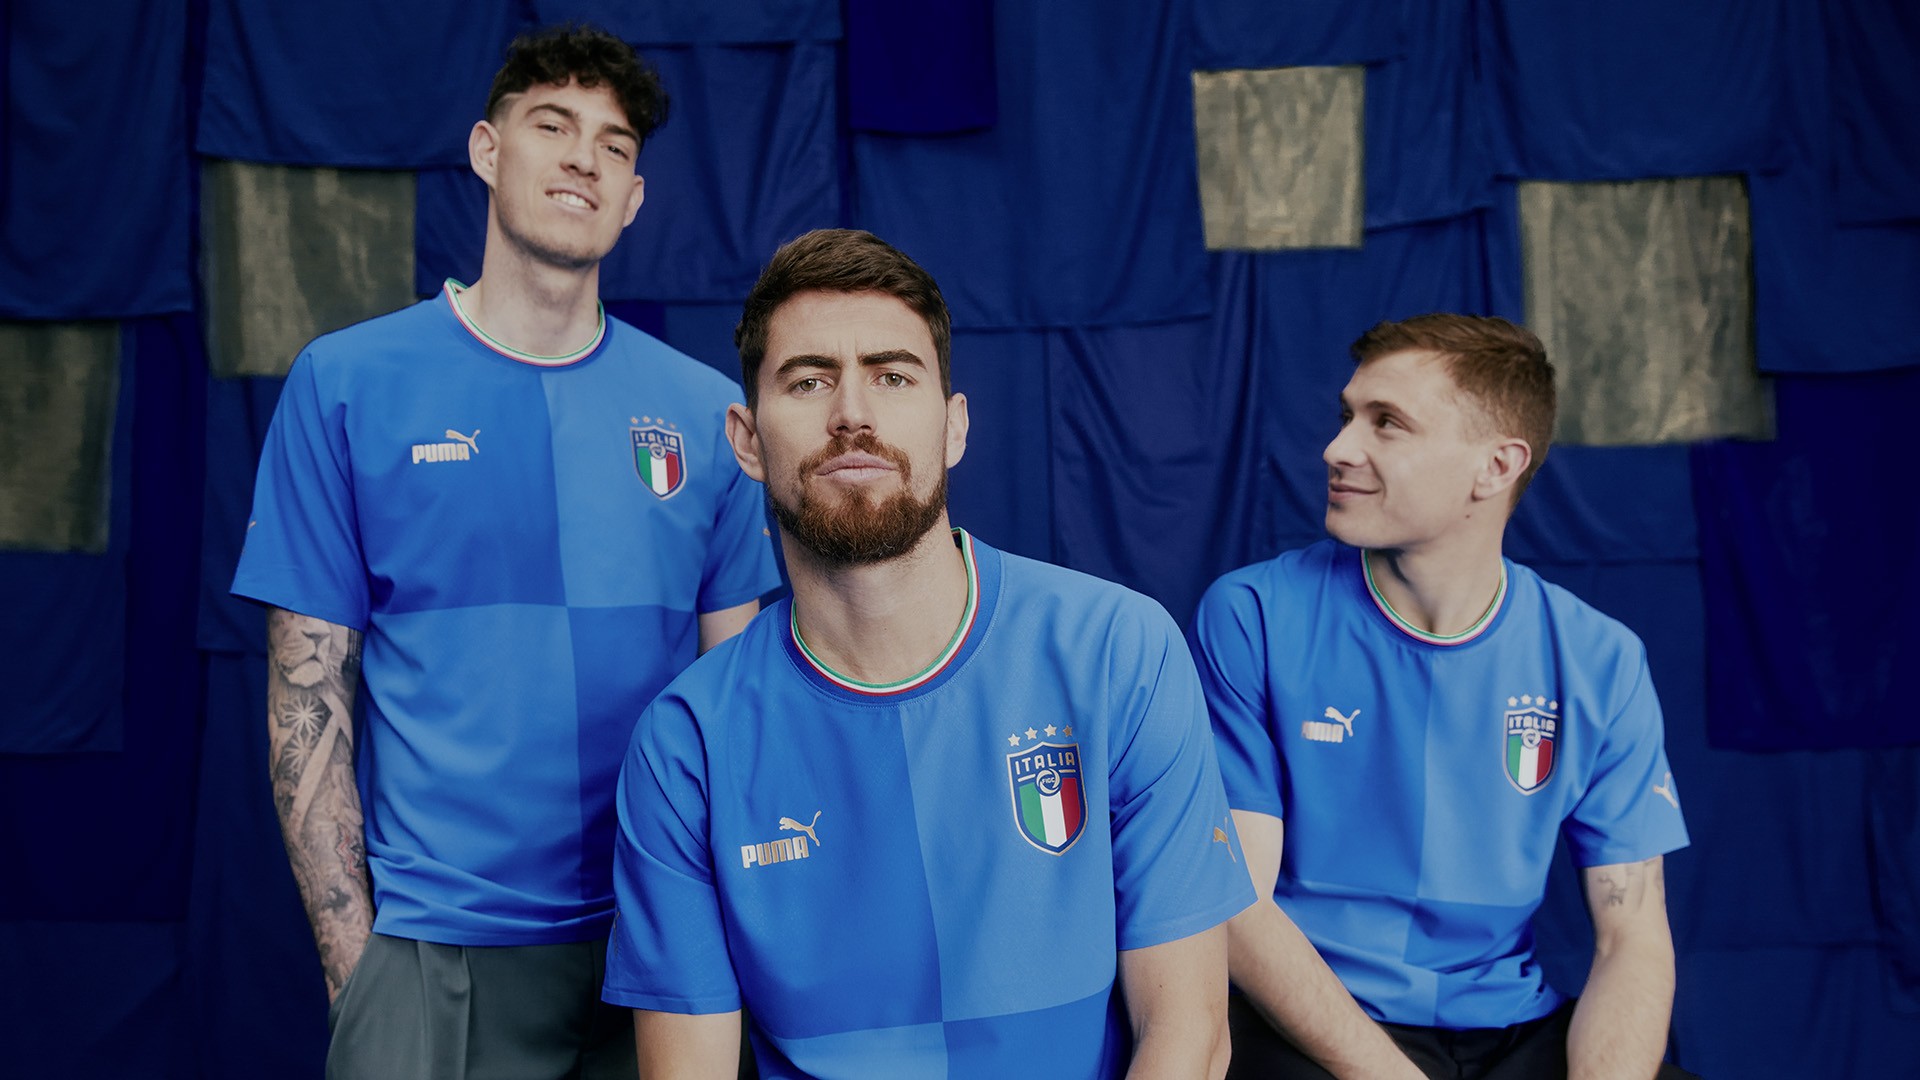 Com Jorginho ao centro, Itália anuncia novos uniformes para 2022 (Foto: Divulgação/Puma)